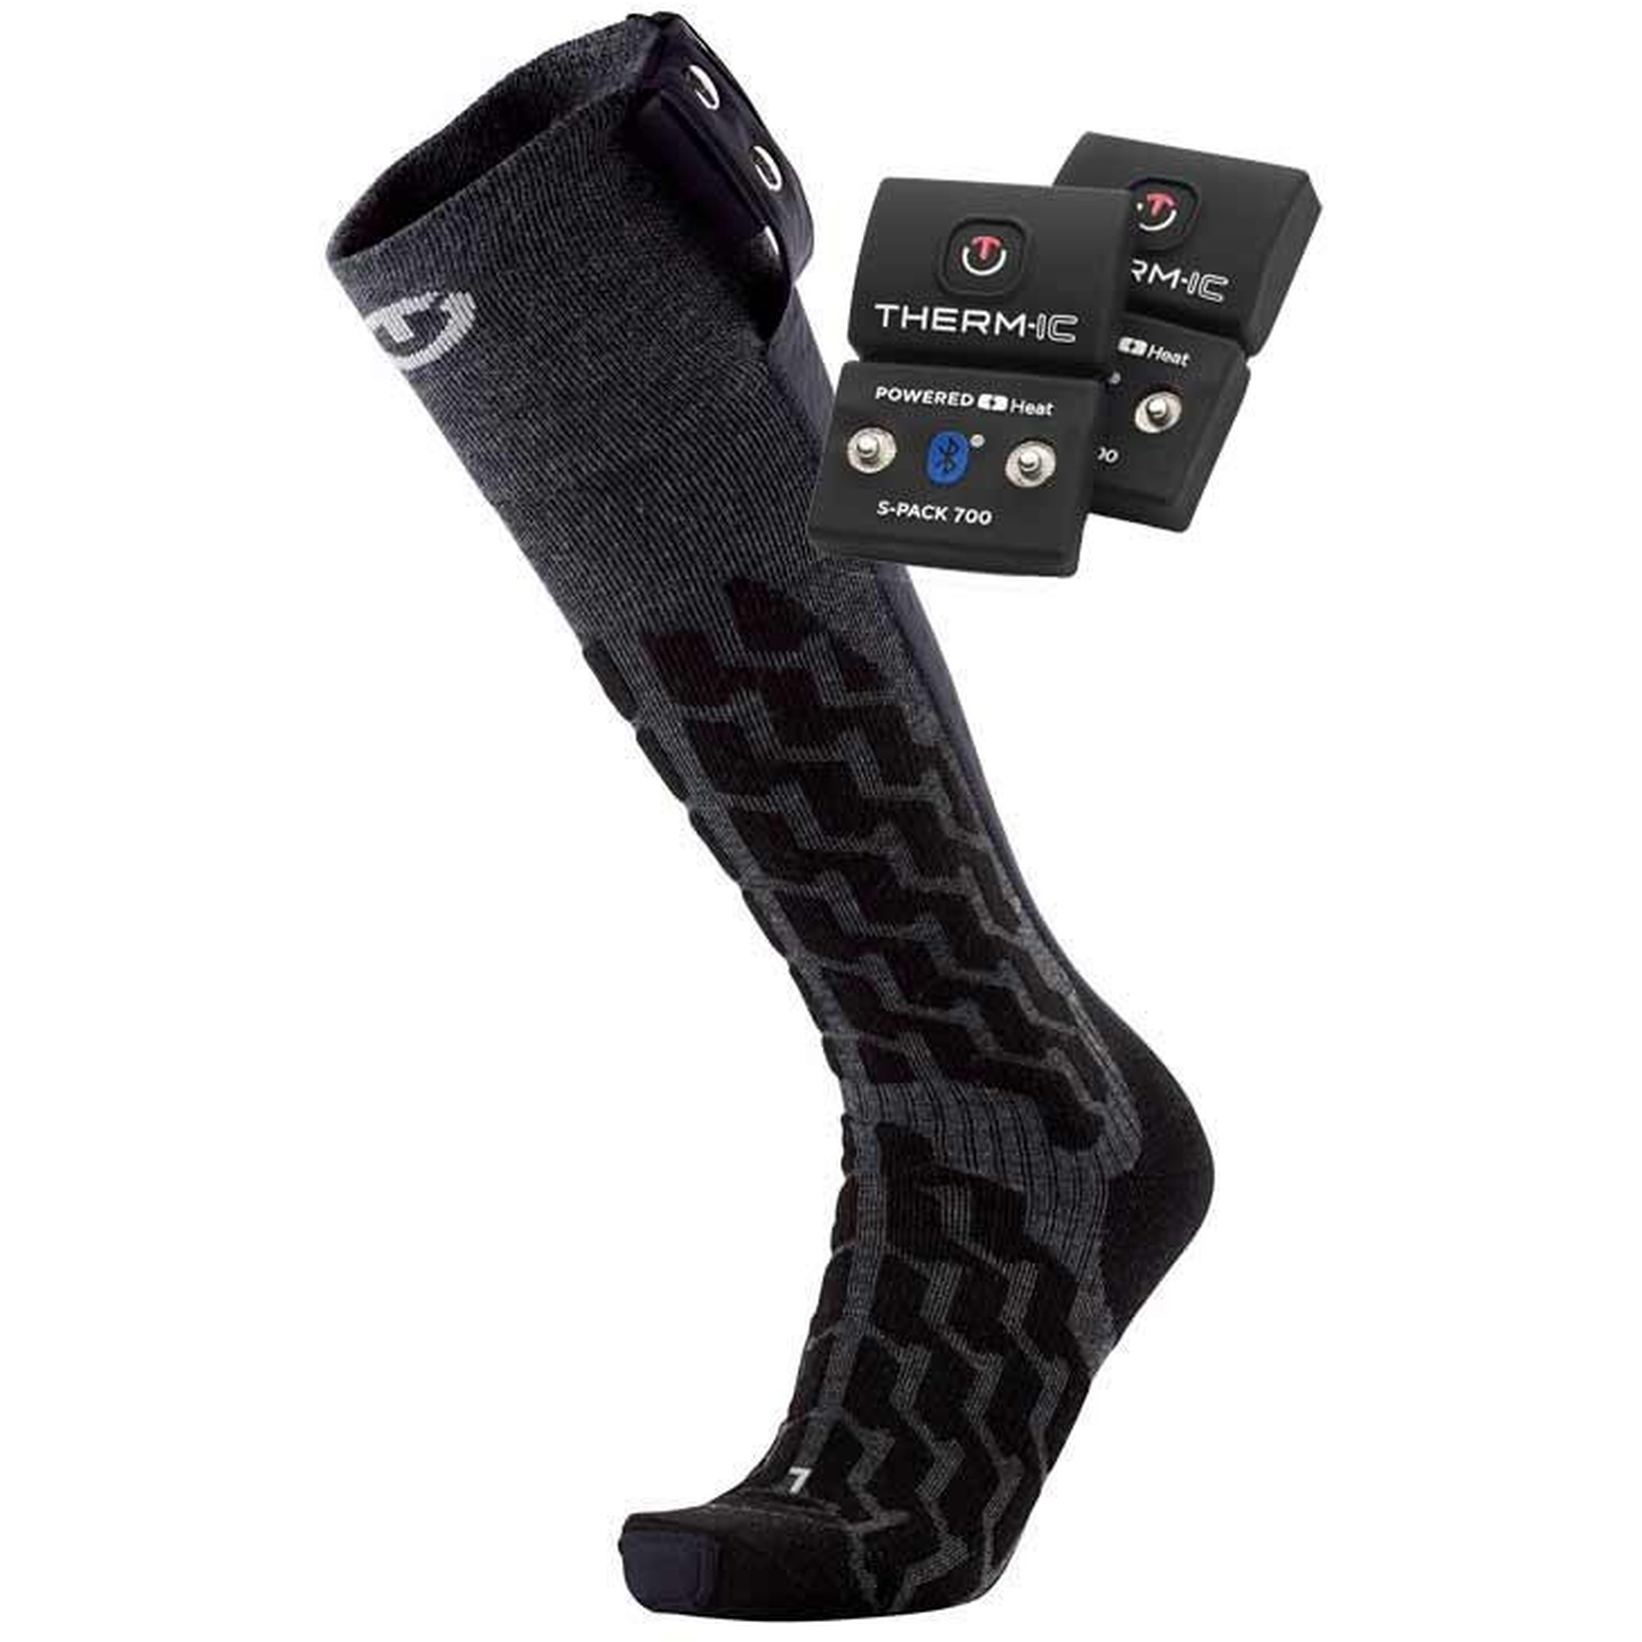 Produktbild von therm-ic Powersock Set - Heat Fusion Uni Beheizbare Socken + Akku S-Pack 700 BT ND - schwarz